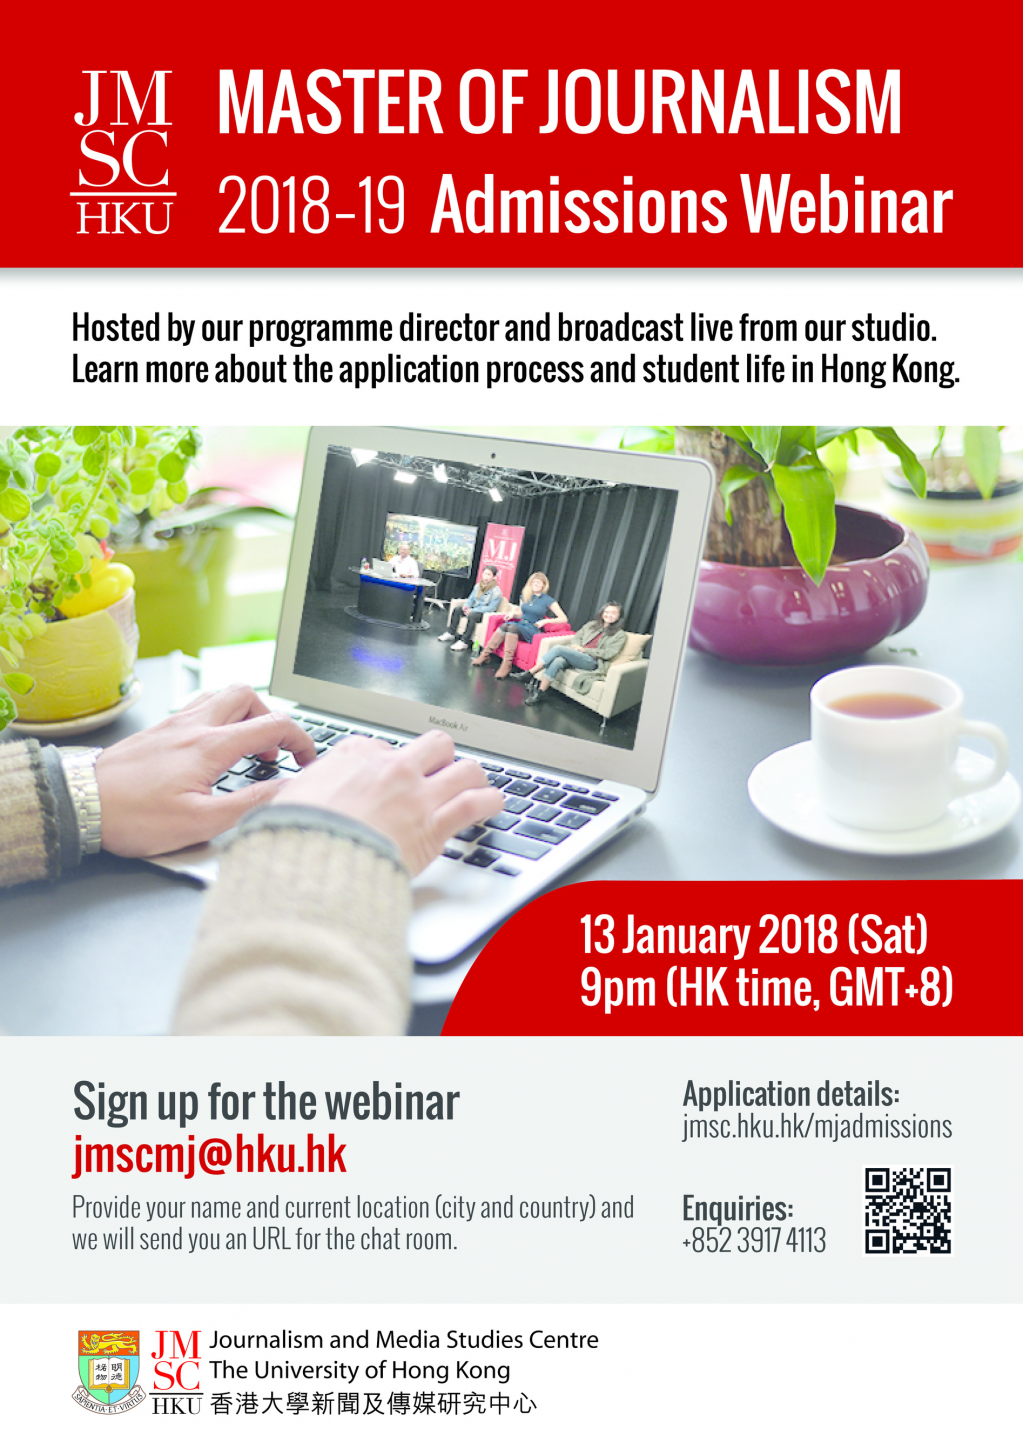 Master of Journalism 2018-19 Admissions Webinar: 13 January 2018 - Register at jmscmj@hku.hk!